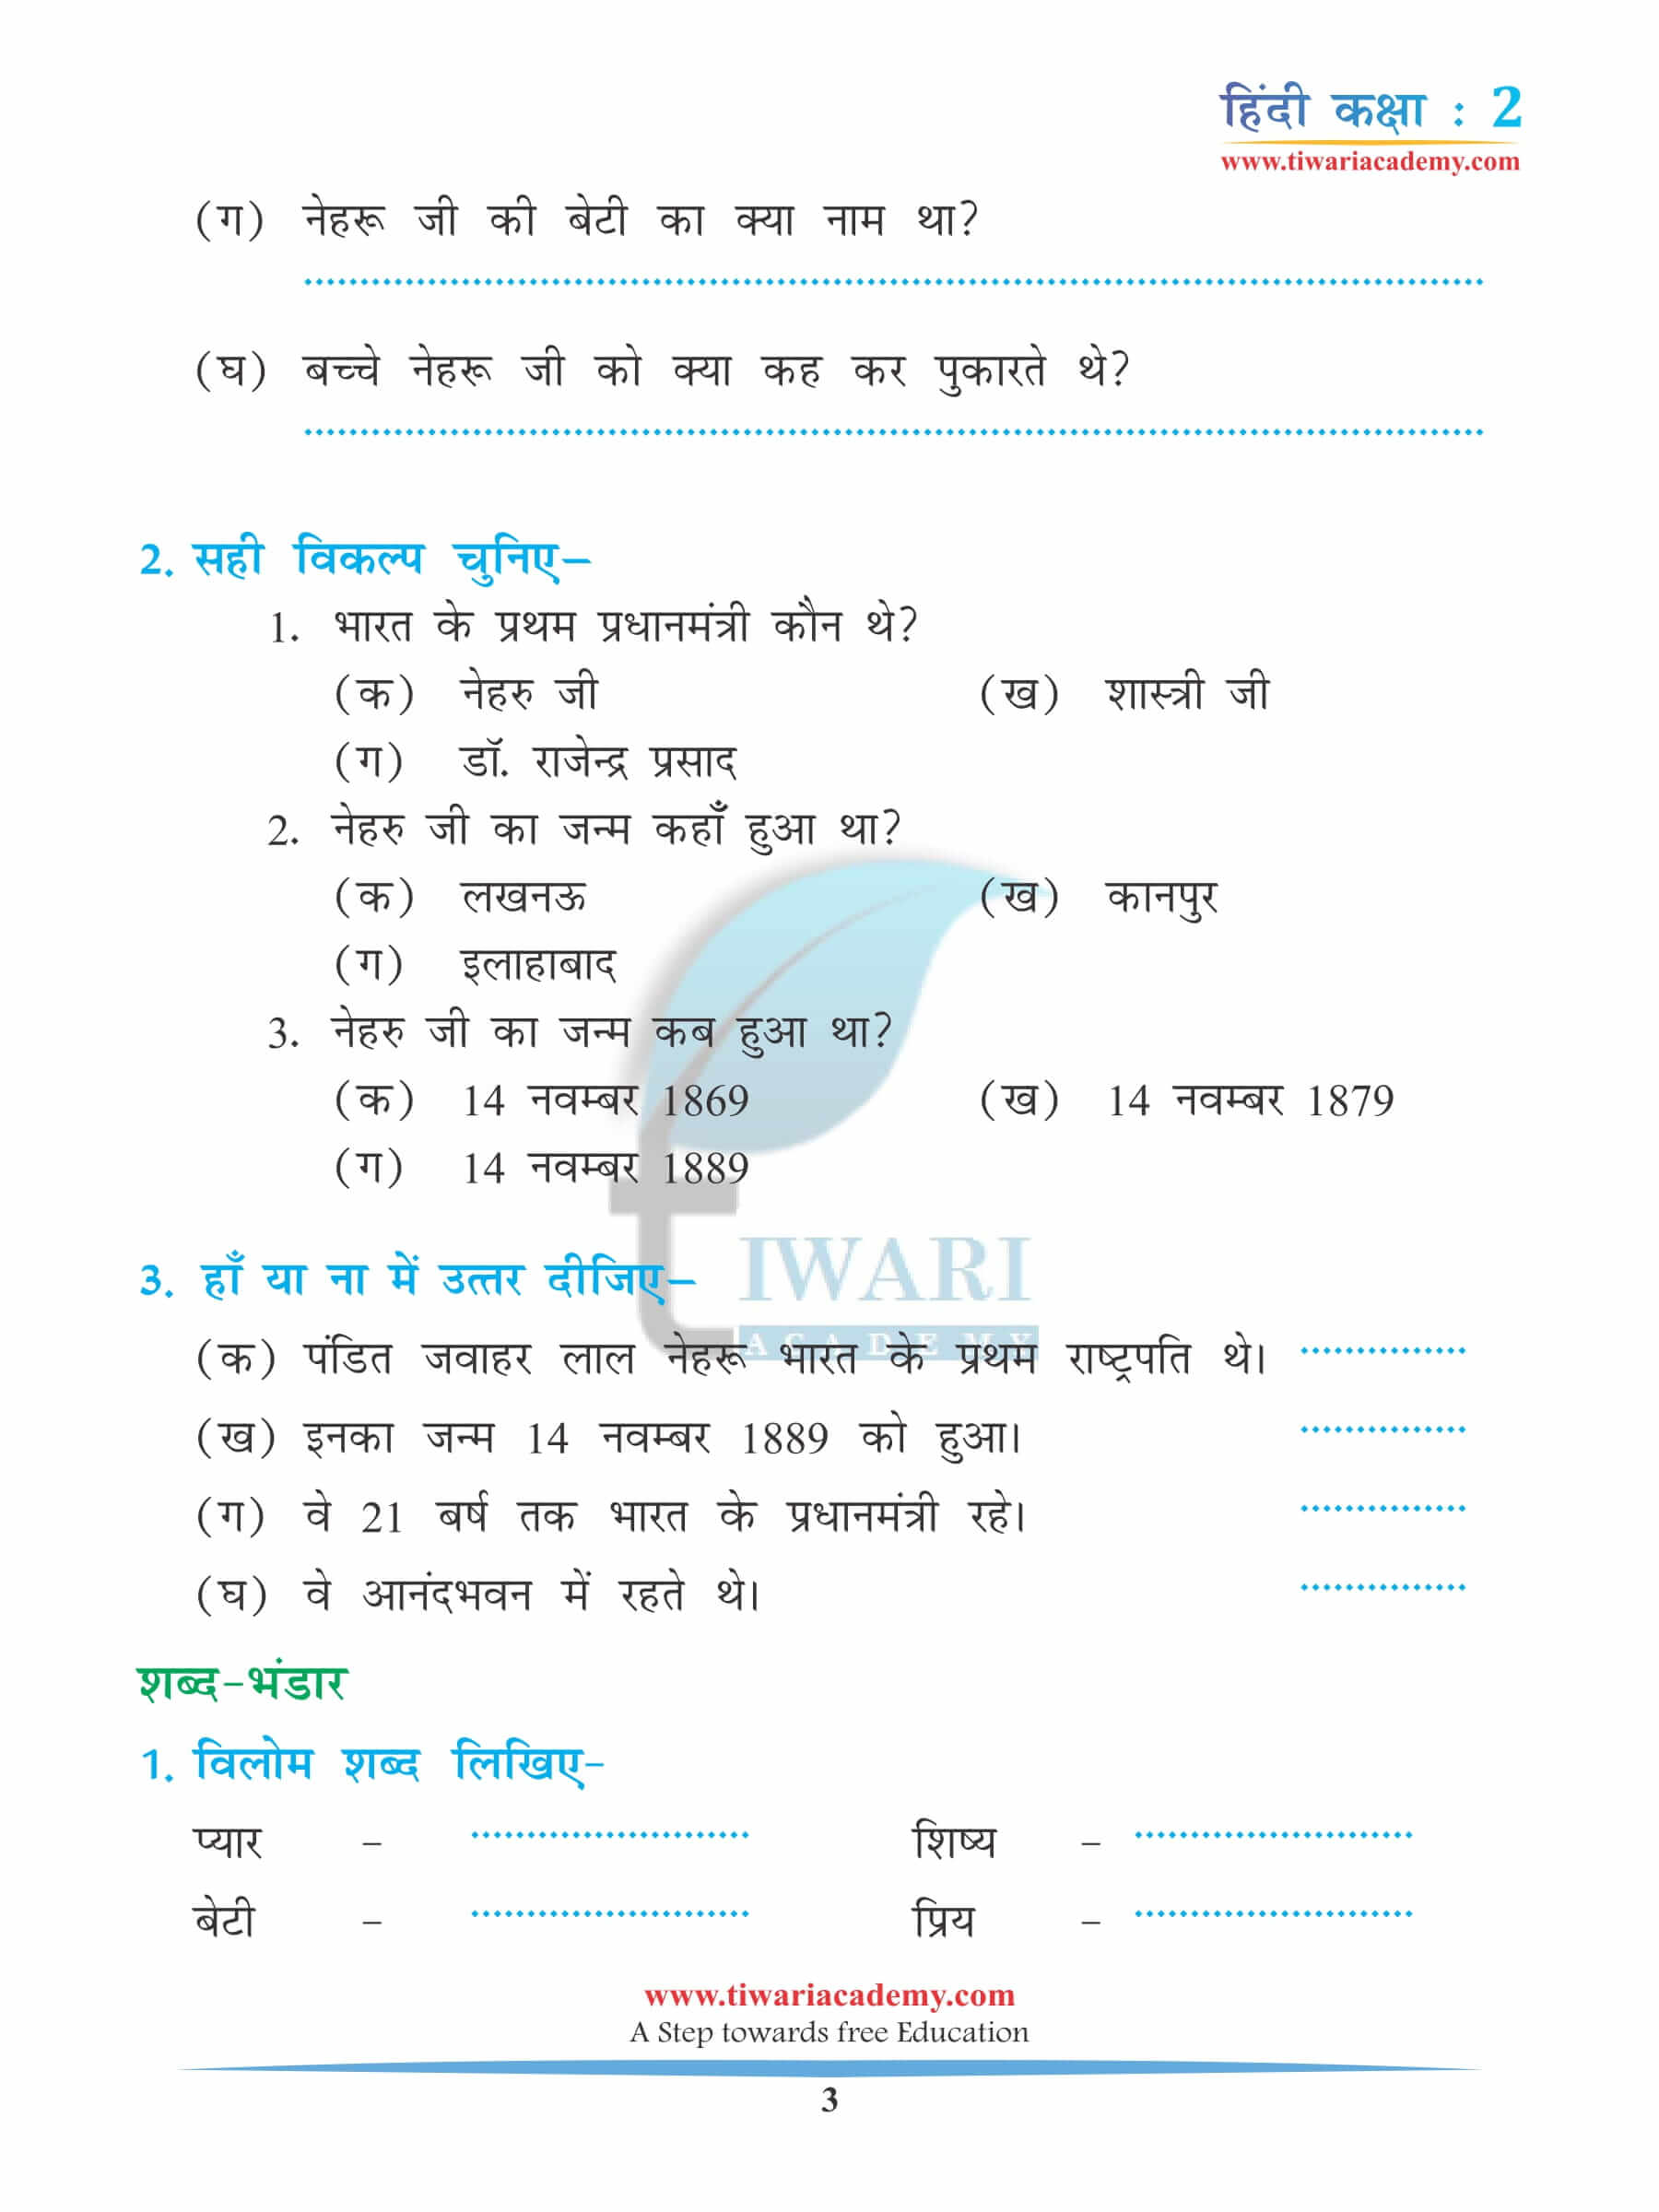 कक्षा 2 हिंदी अध्याय 13 अभ्यास के प्रश्न